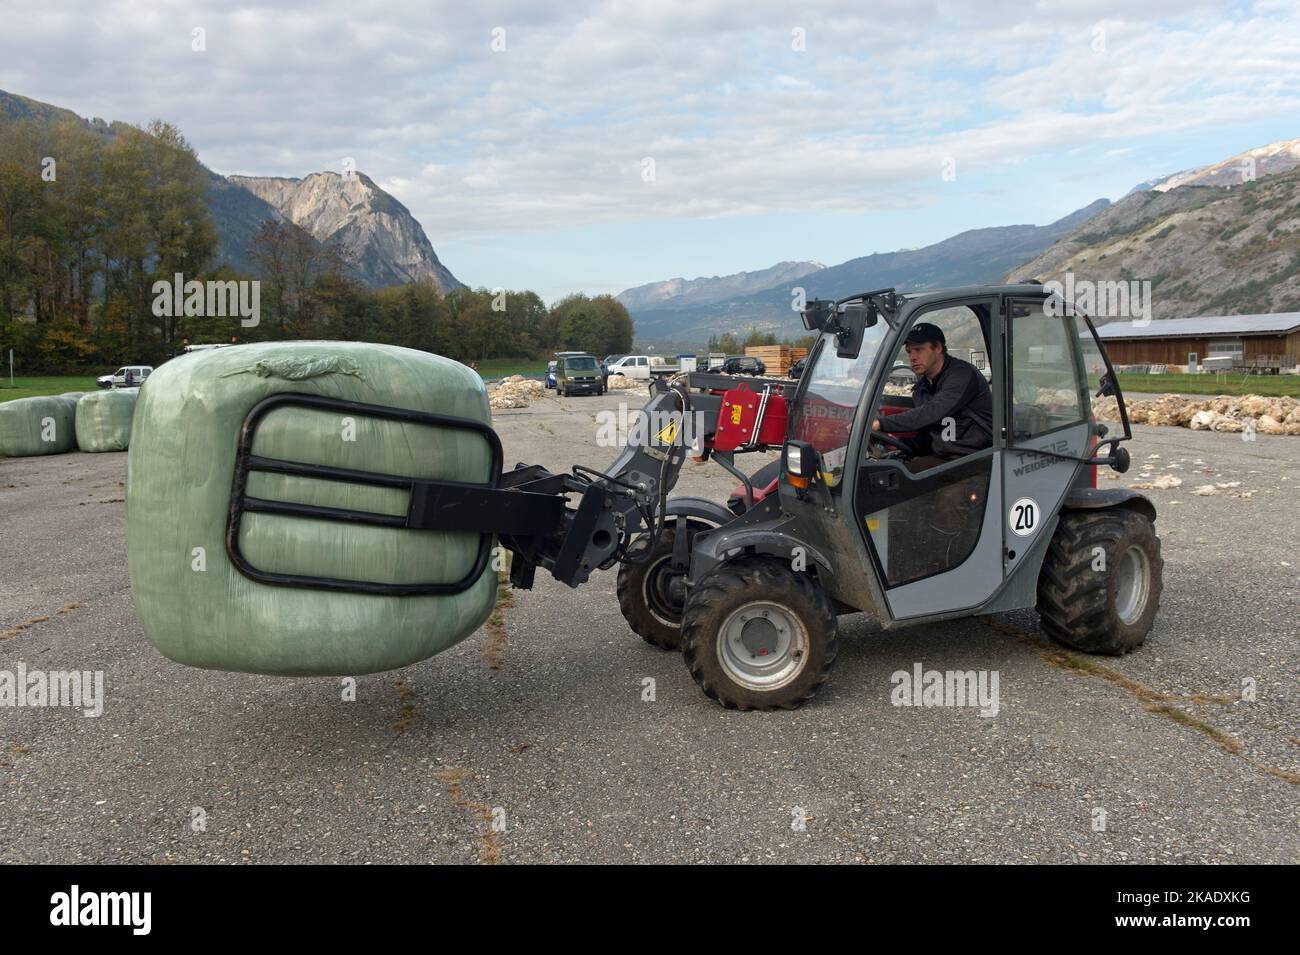 Téléhandler transporte une balle de laine, livraison de laine de brebis galeuses du Valais à un point de collecte de Swisswool, Turtmann, Valais, Suisse Banque D'Images